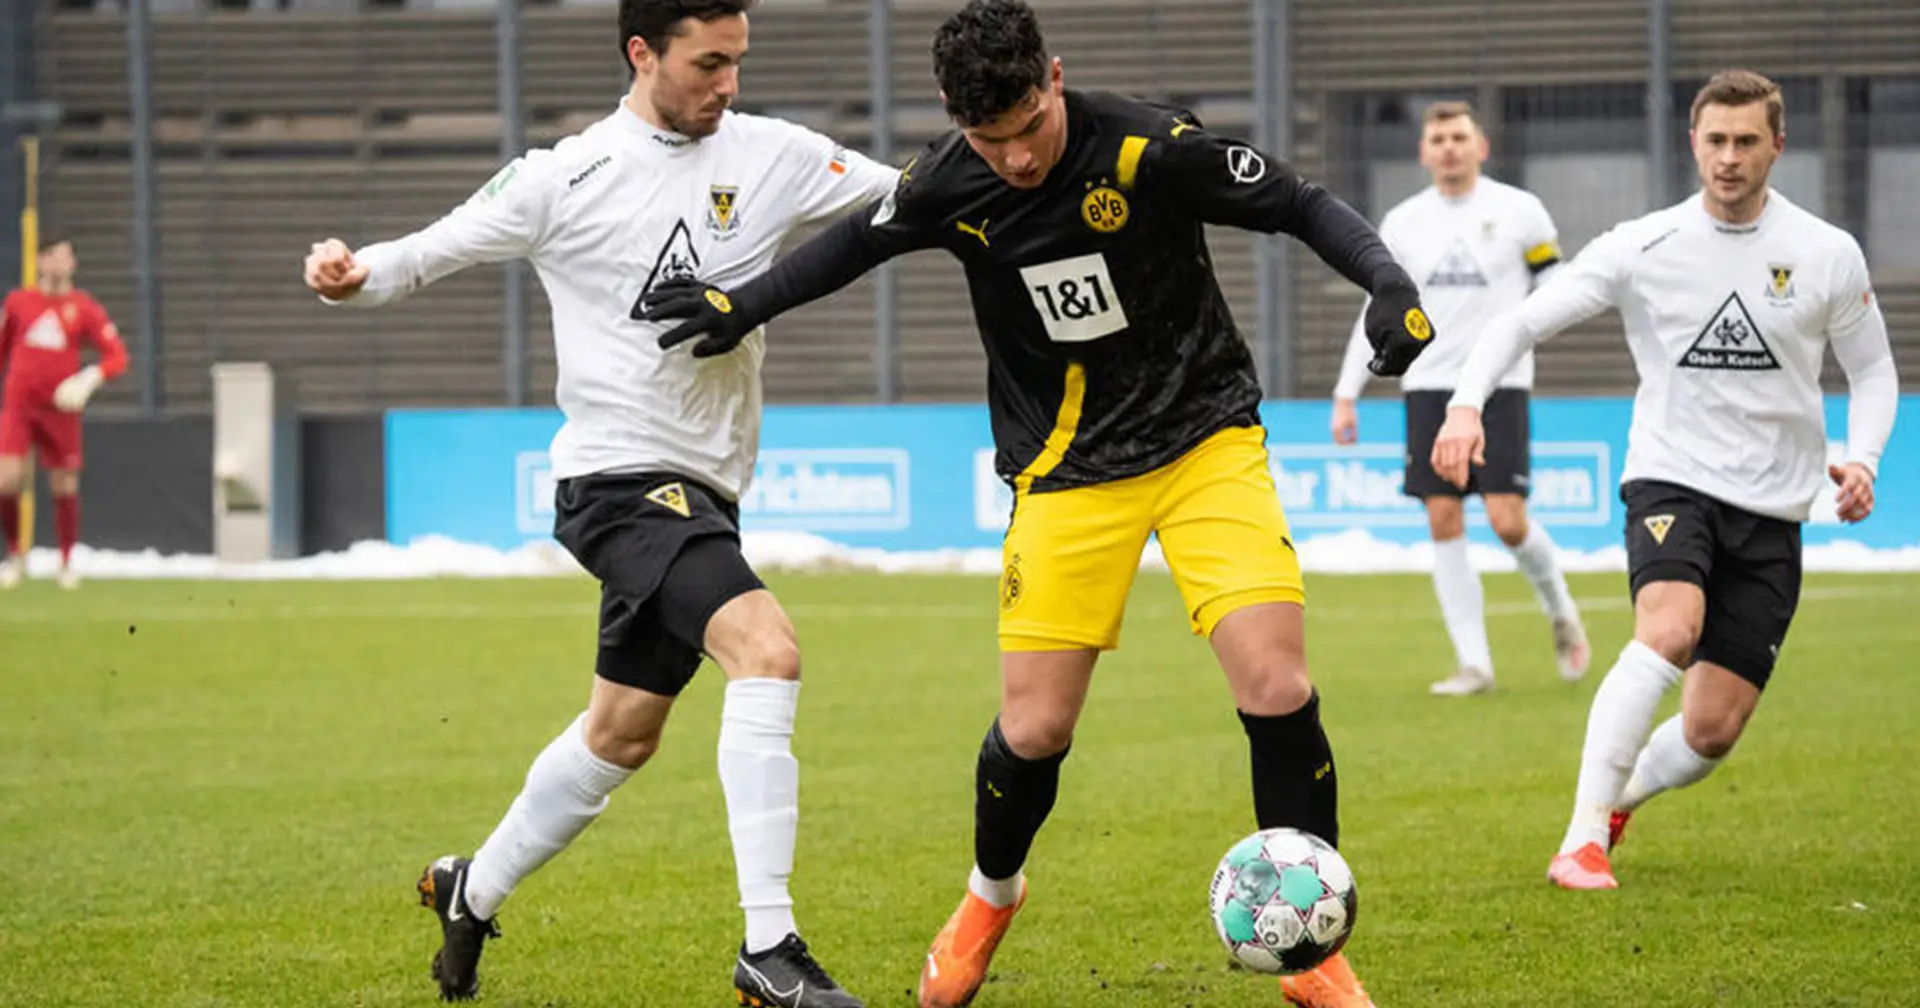 U23 des BVB schlägt Alemannia Aachen